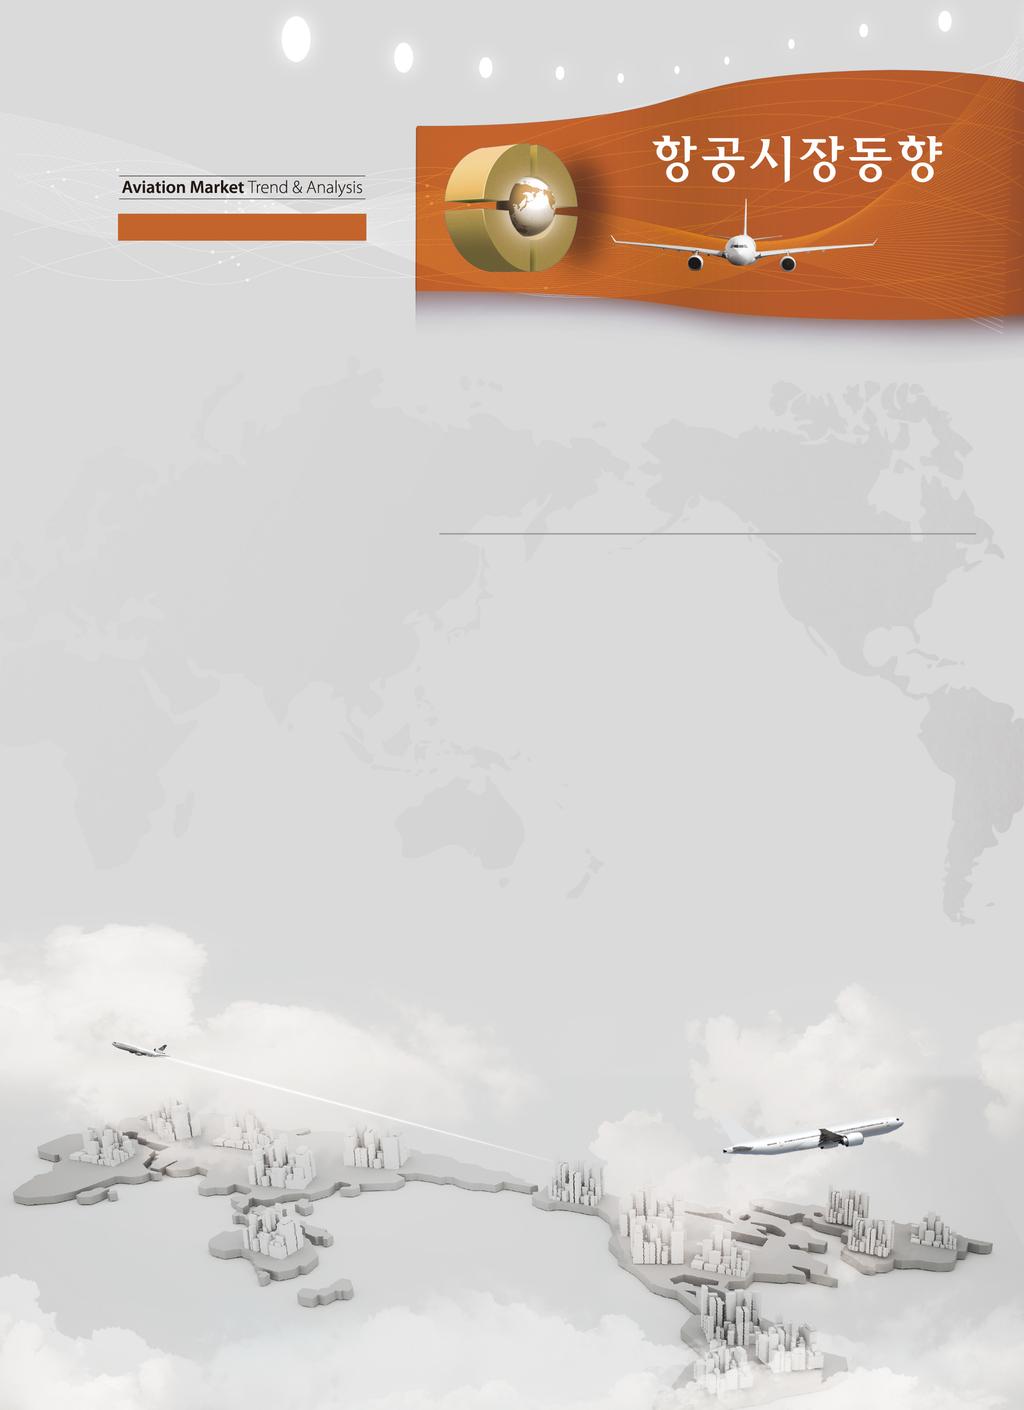 통권제 38 호 (2015.08) Ⅱ. 글로벌항공운송시장 1. 글로벌항공여객동향 / 49 1.1 IATA 글로벌항공운송동향 (6 월 ) / 49 1.2 IATA 프리미엄클래스시장동향 (6 월 ) / 59 1.